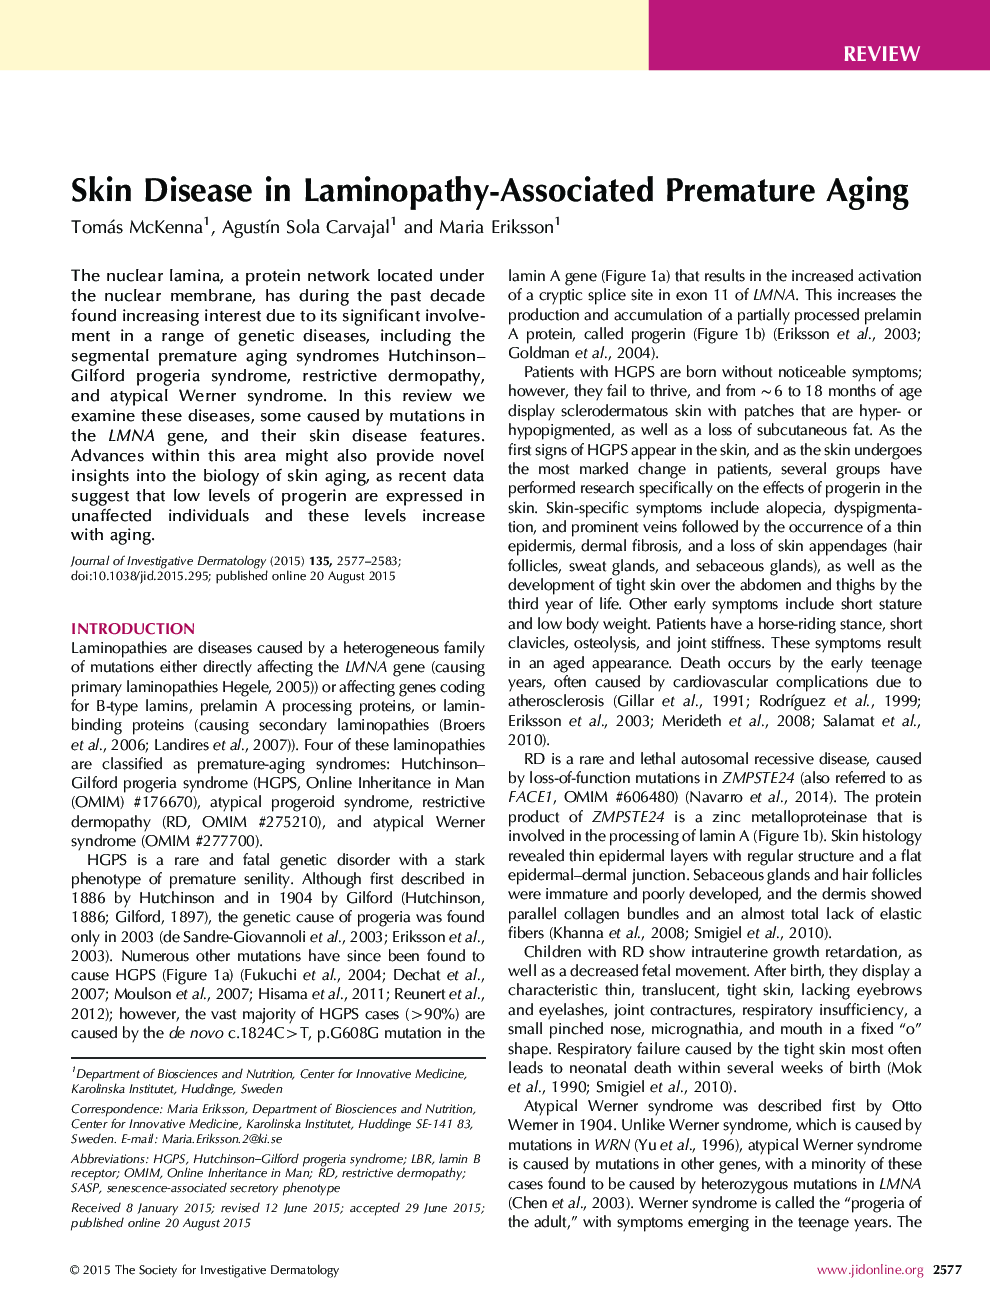 نقص مقاله بیماری پوستی در پیری زودرس لامینوپاتی مرتبط است 